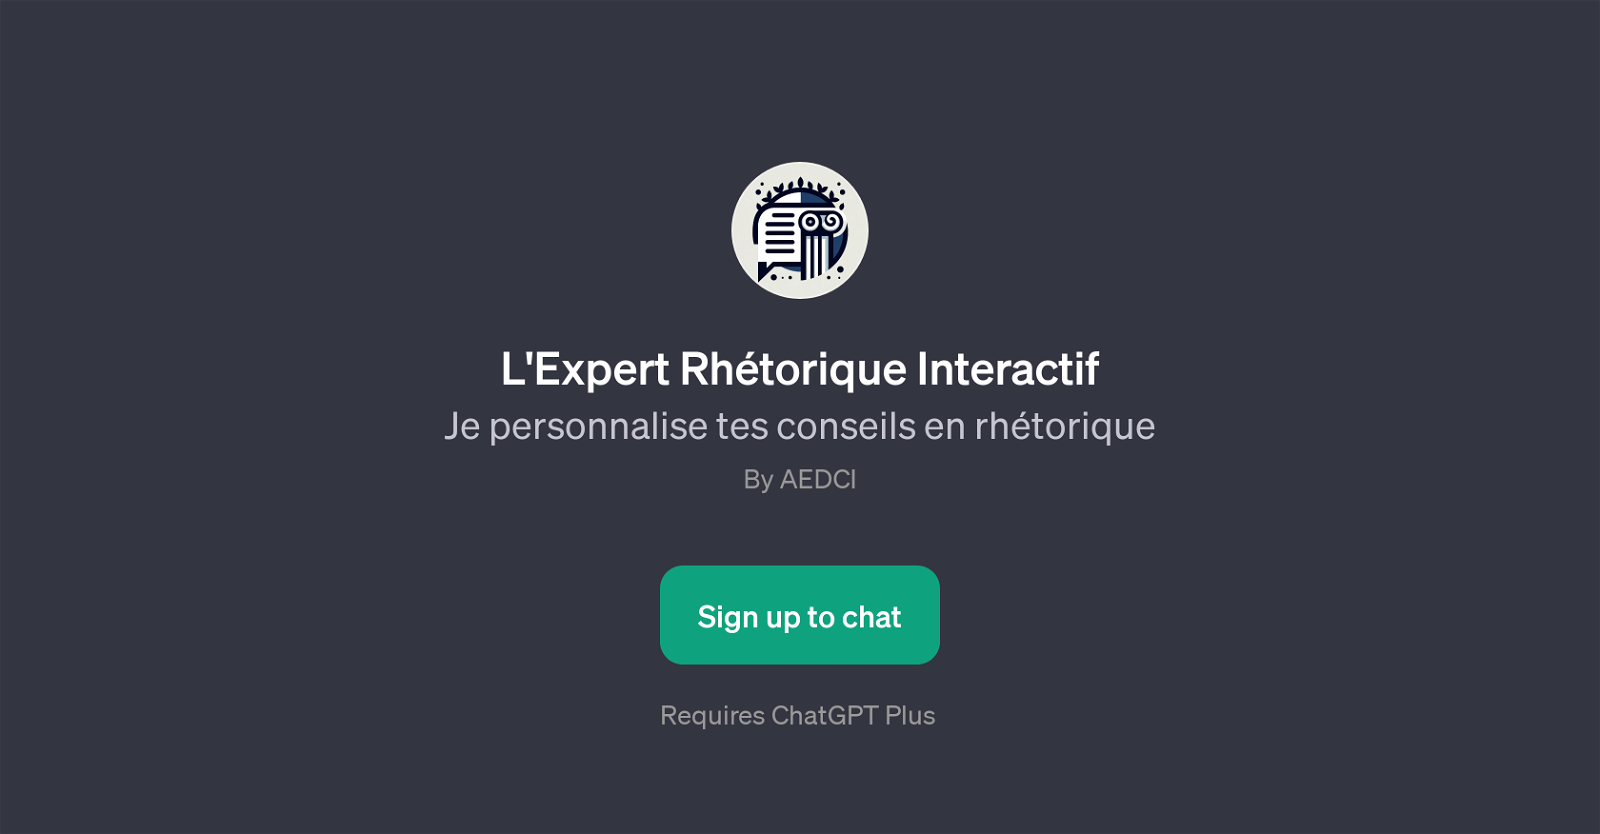 L'Expert Rhtorique Interactif website